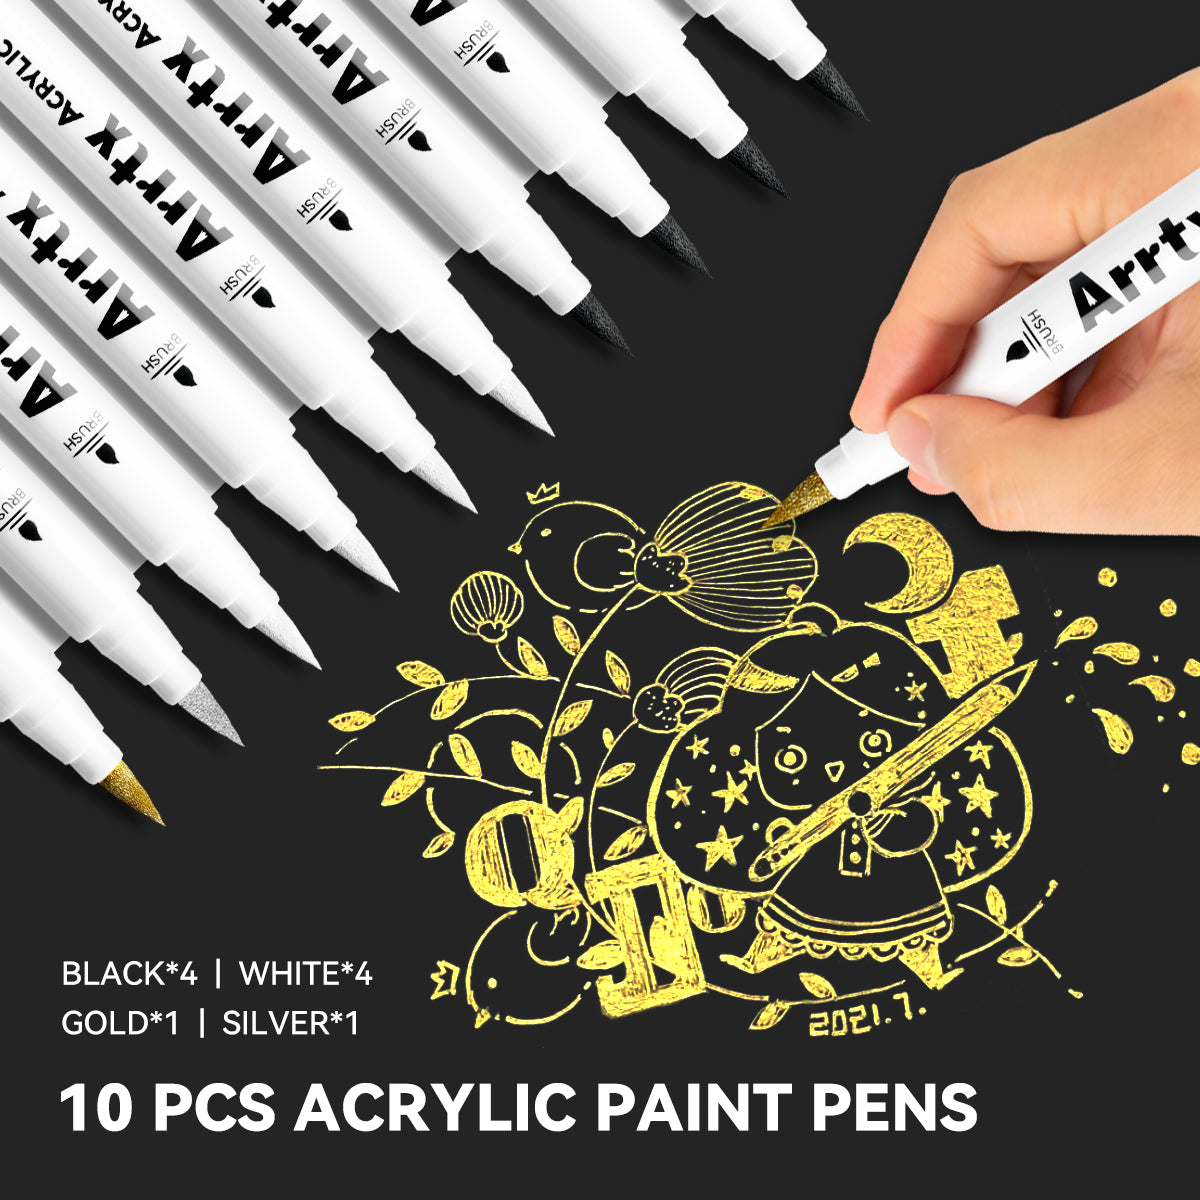 Arrtx Acrylic Paint Pens 10 Pack Brush Tip Paint Markers